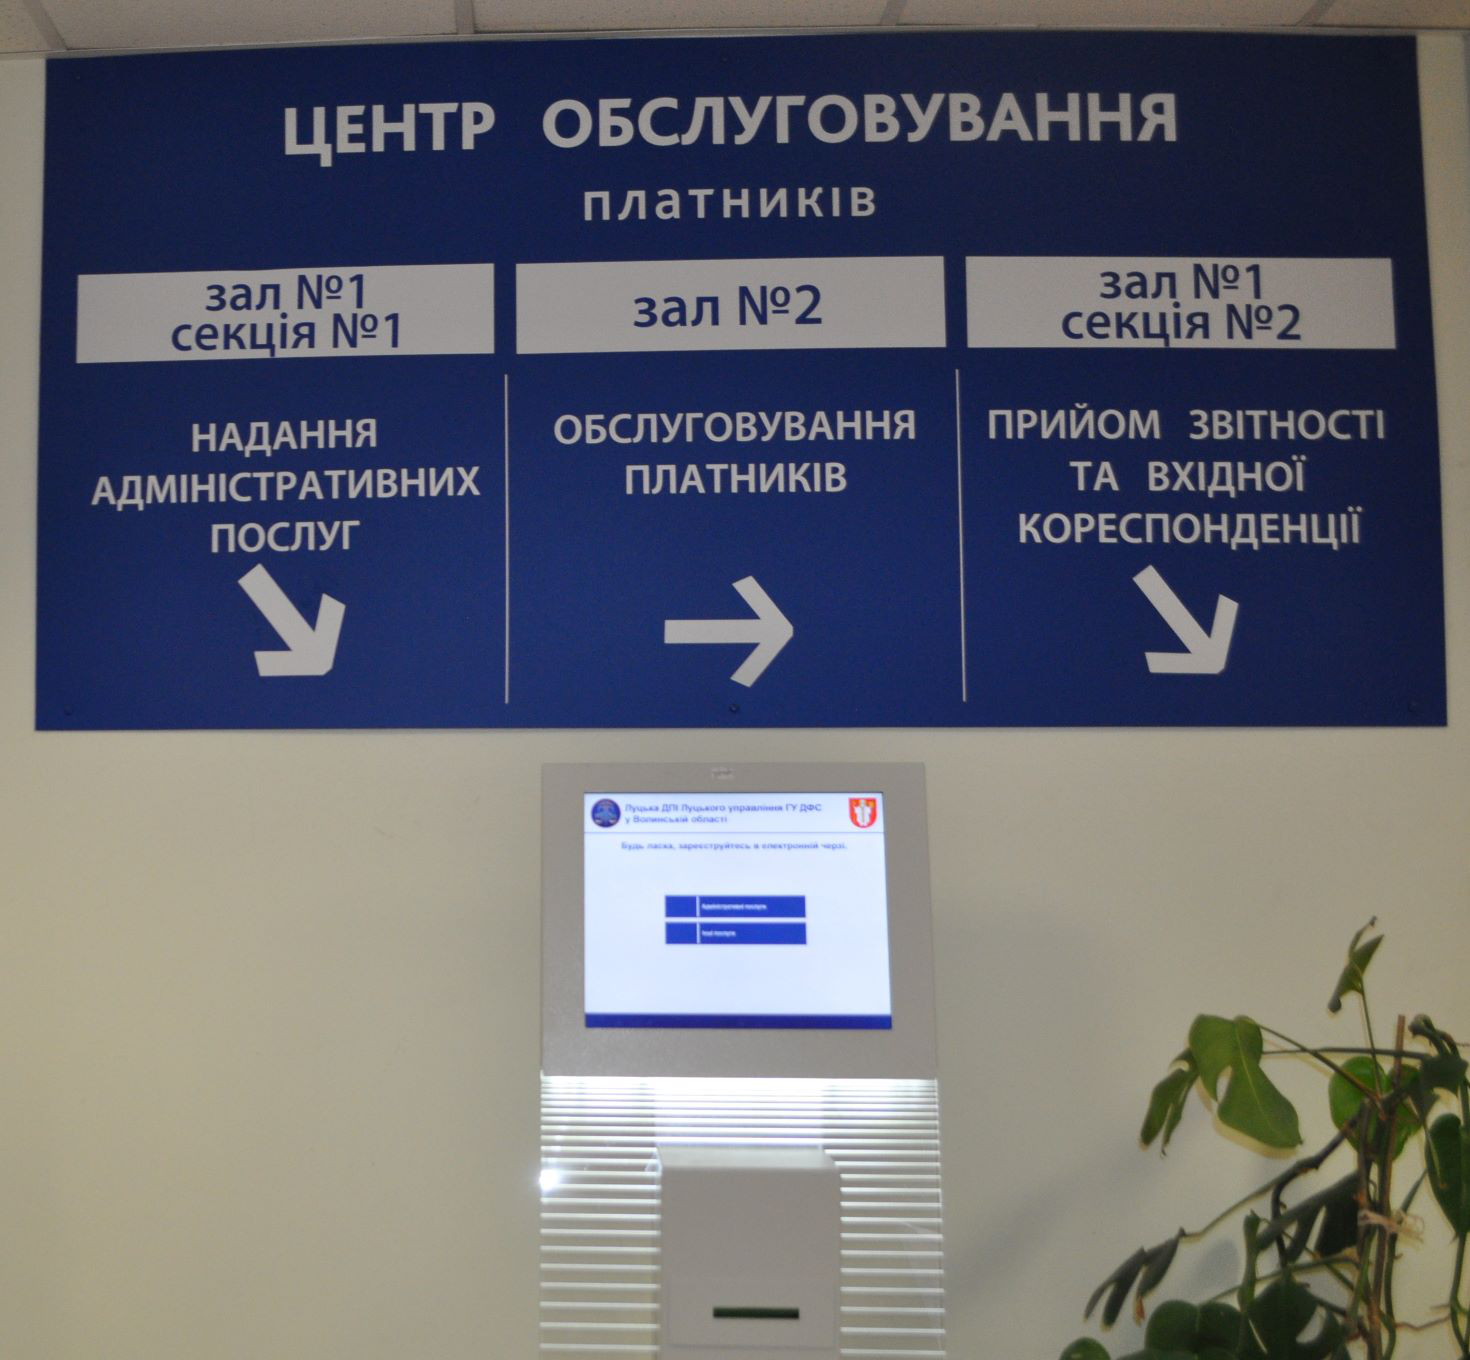 У центрі обслуговування податкової у Луцьку треба ставати в е-чергу